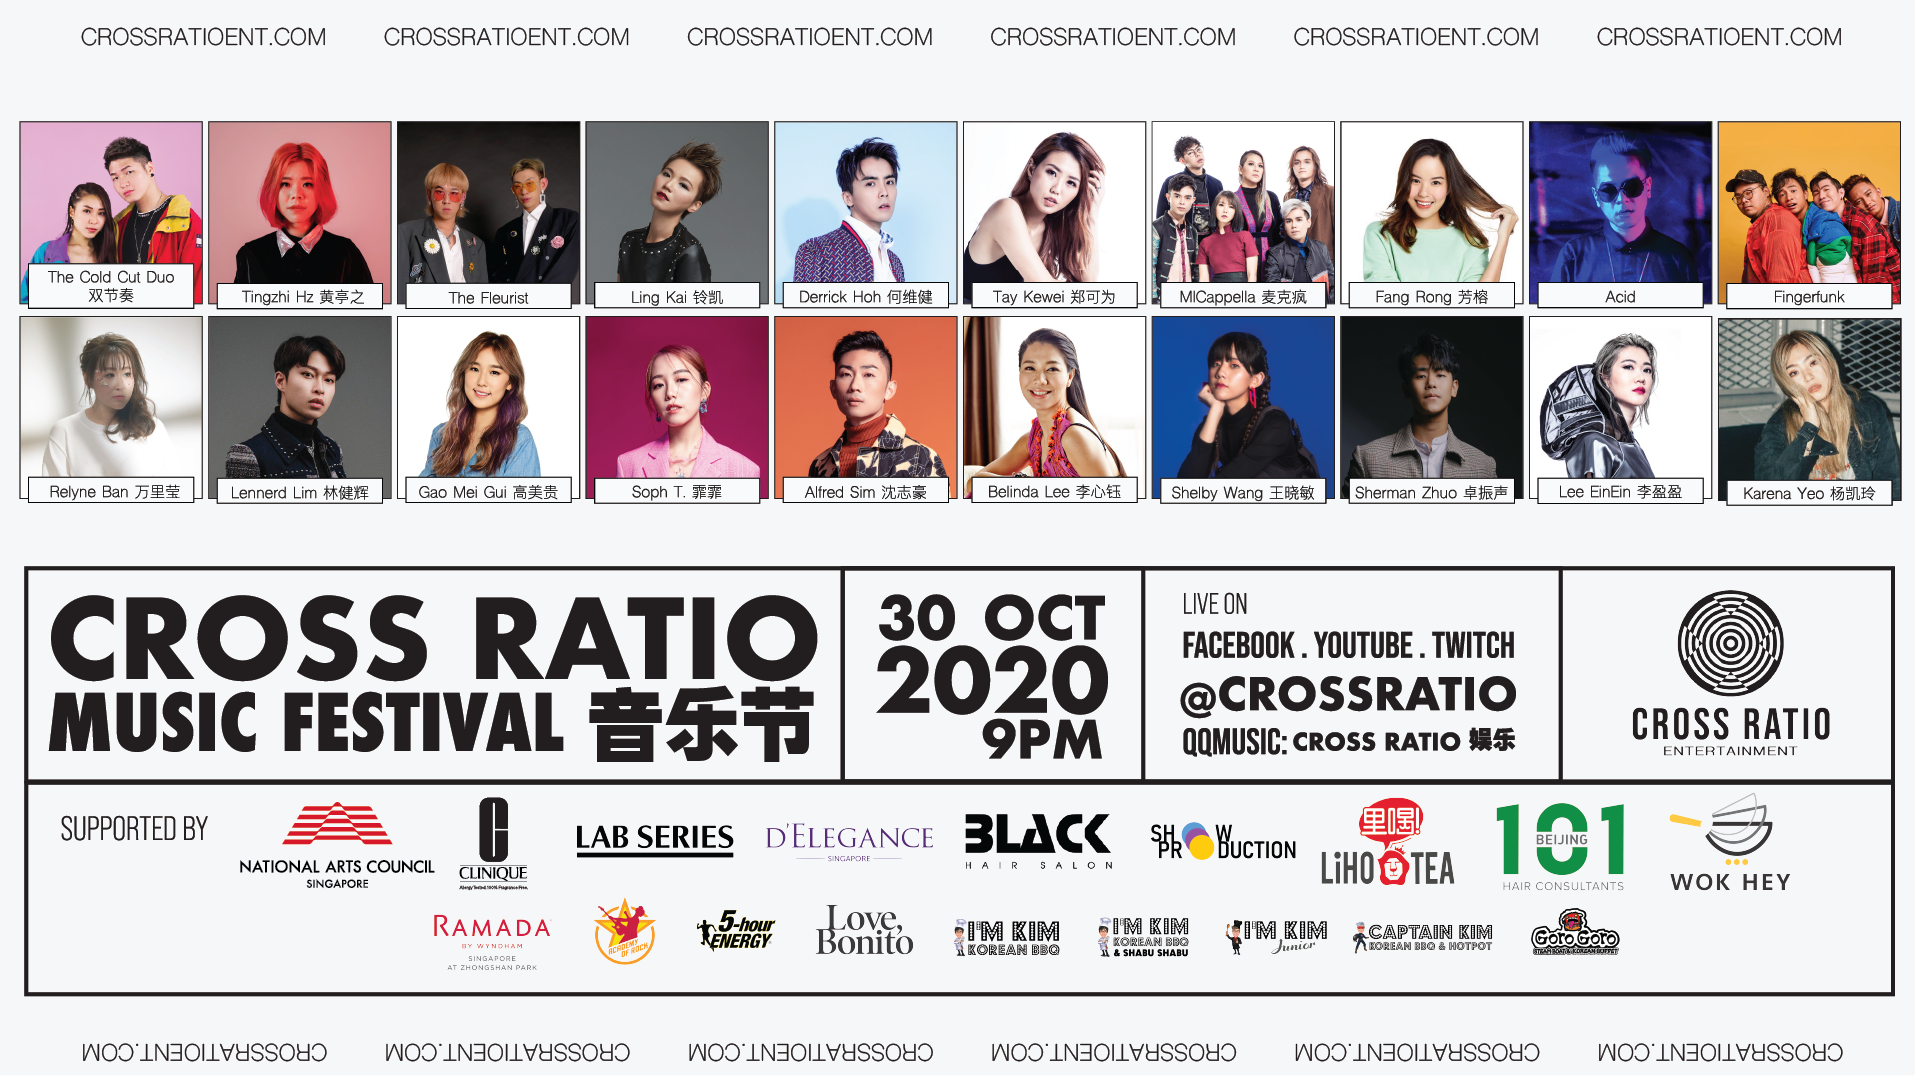 Cross Ratio Music Festival 2020, Singapore, Central, Singapore